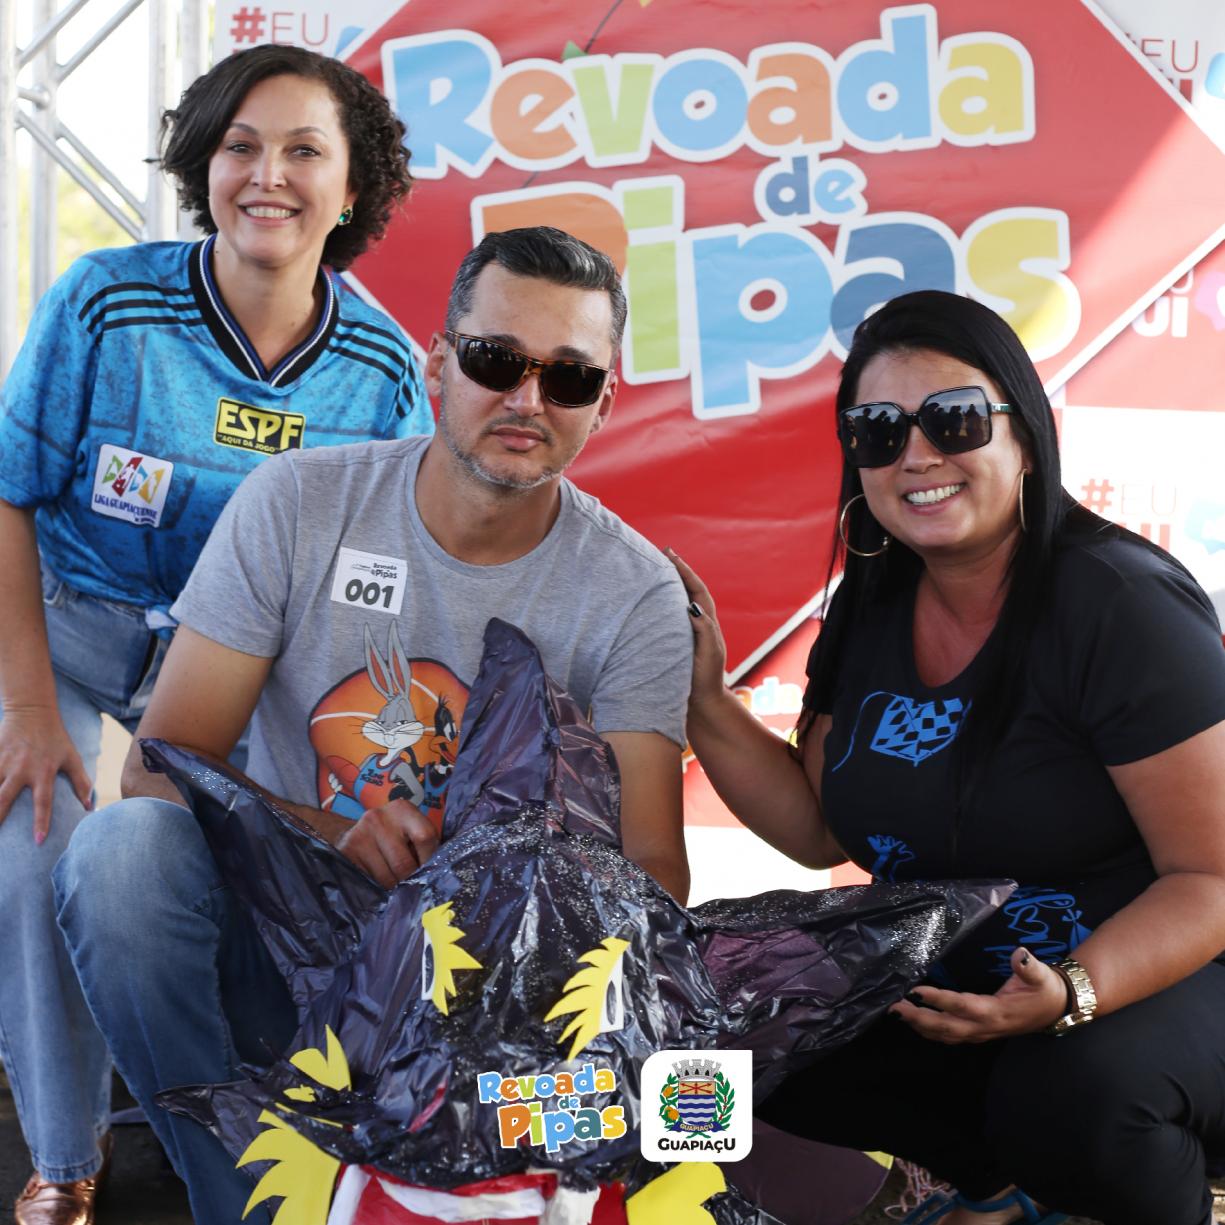 Prefeitura promove 1º Festival de Pipas em Guapiaçu.